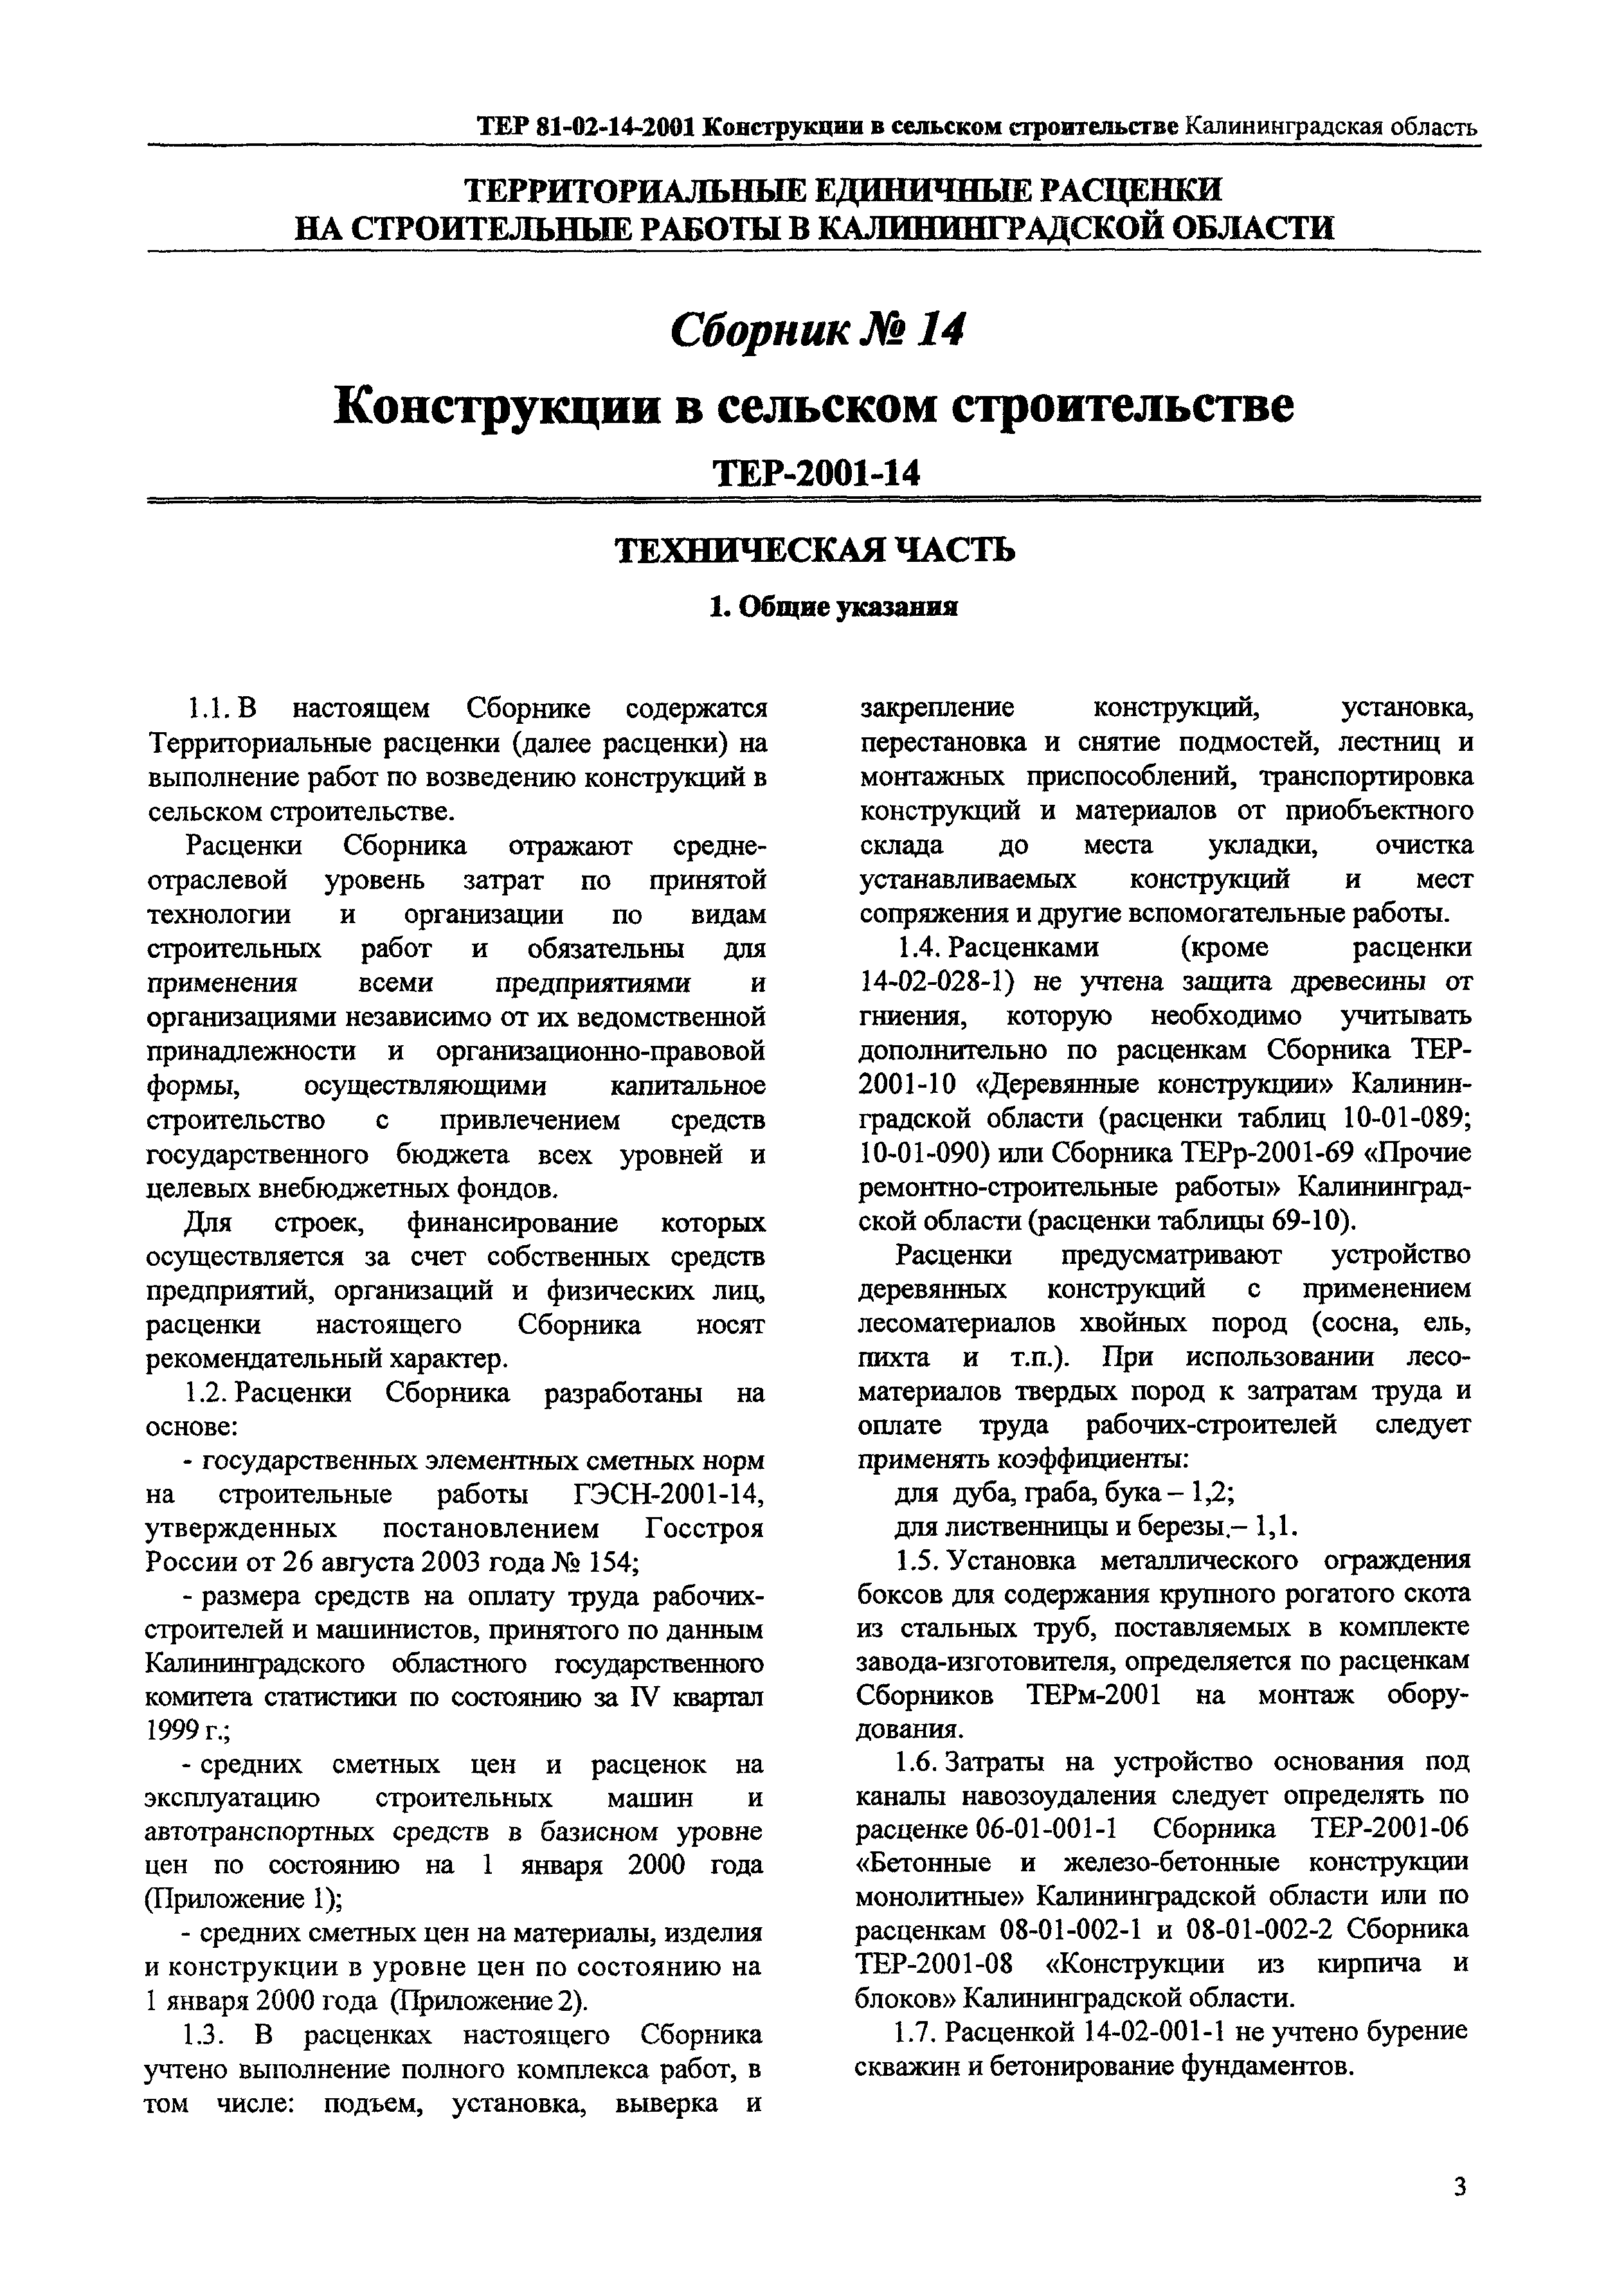 ТЕР Калининградская область 2001-14